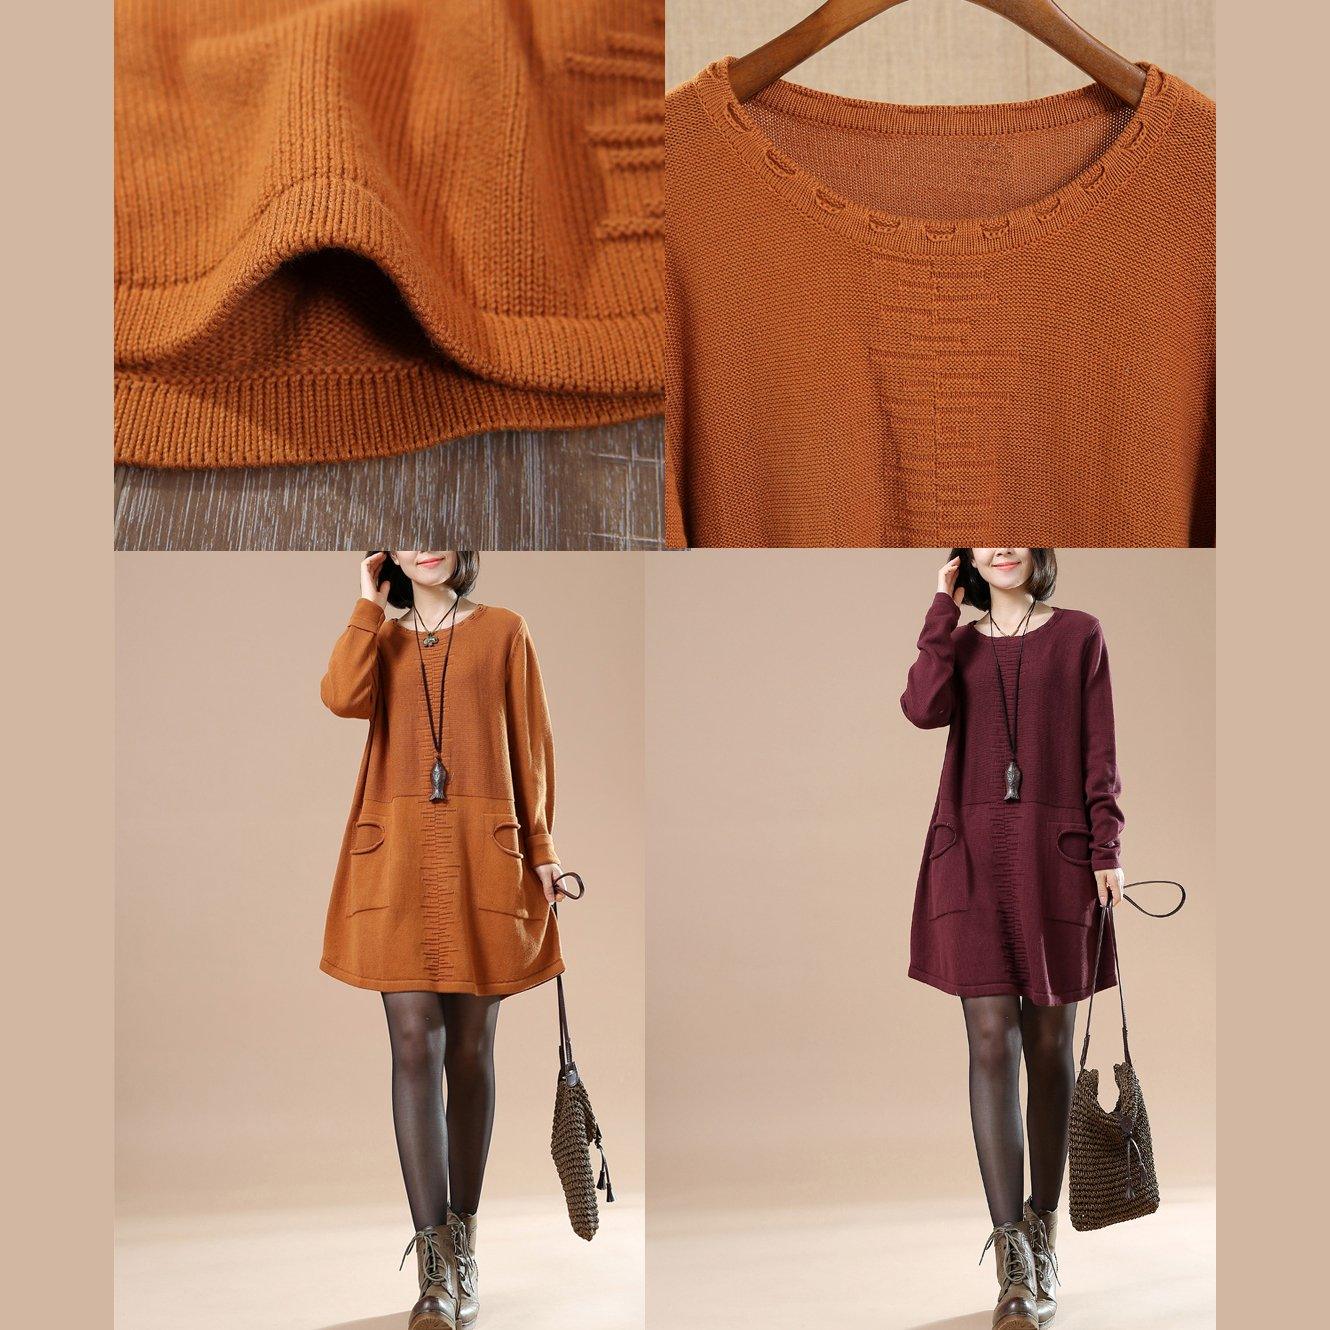 Ruby split pockets women sweaters knit dress - Omychic